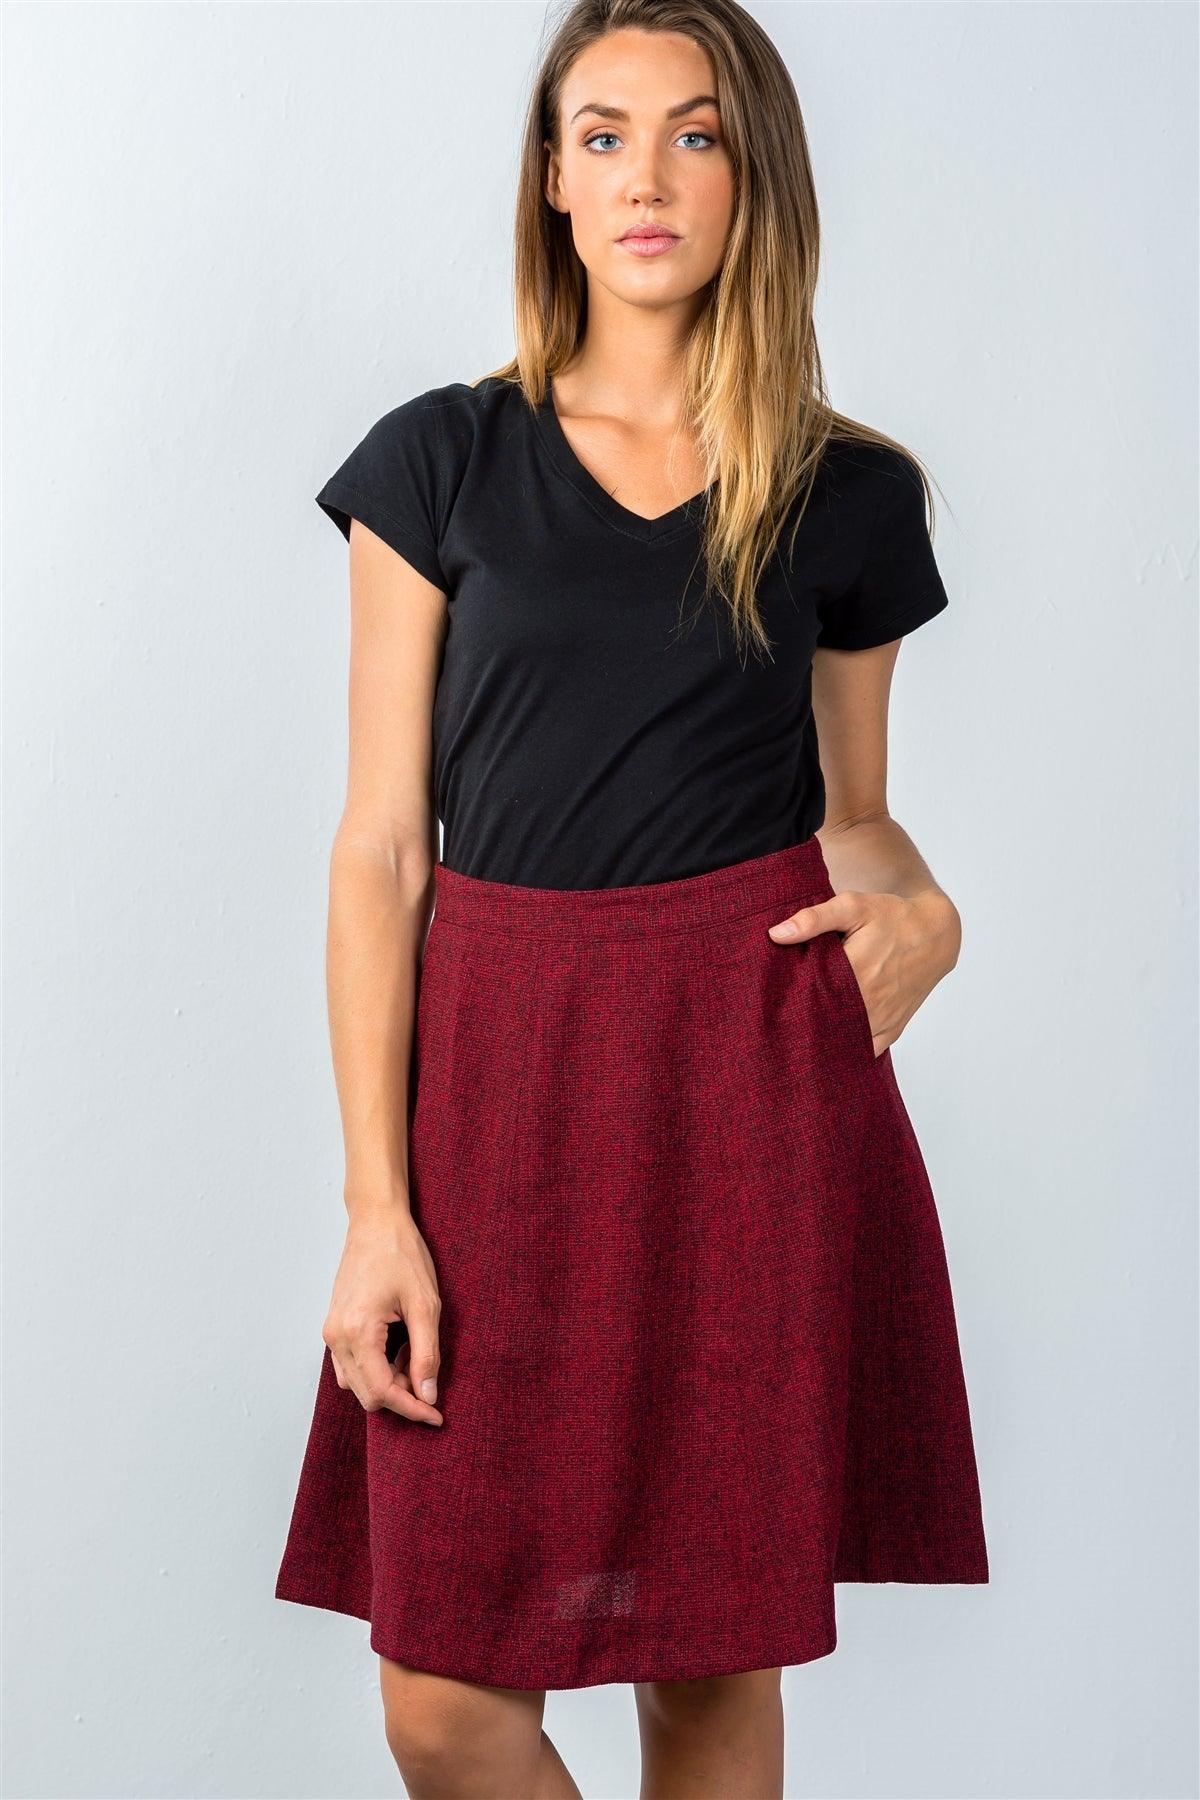 Burgundy Knit Knee-Length Skirt / 2-2-2